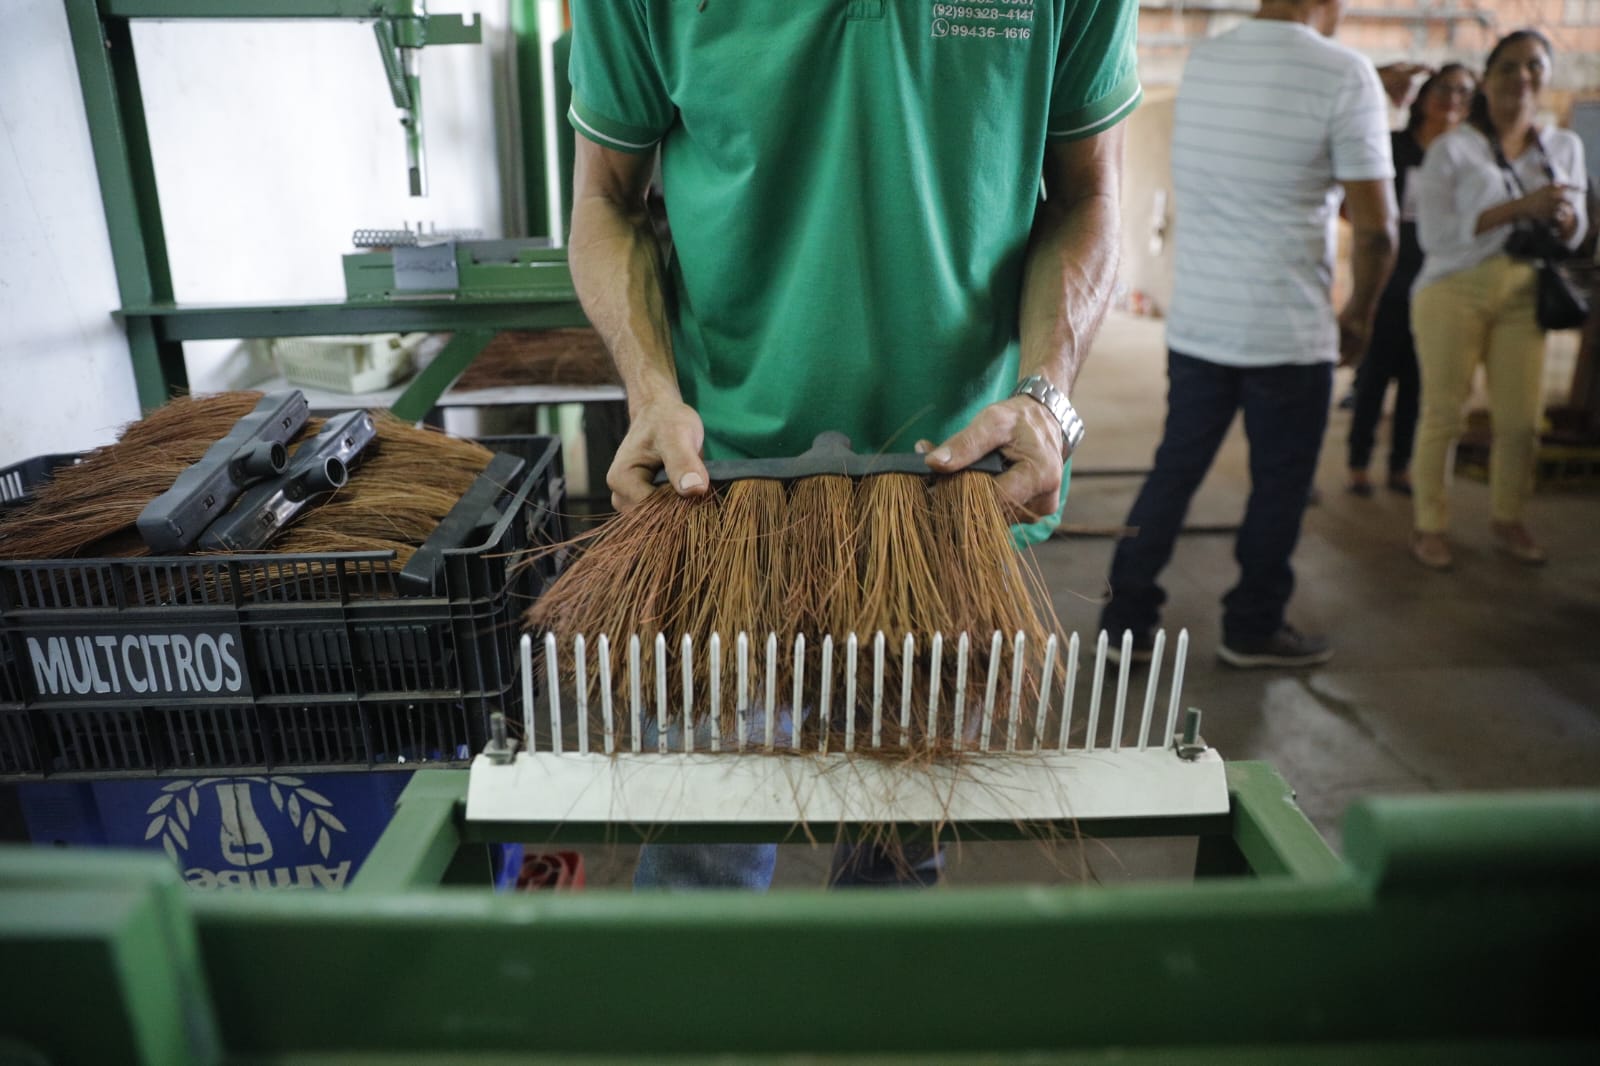 Edital doa equipamentos para fabricação de vassouras no Amazonas